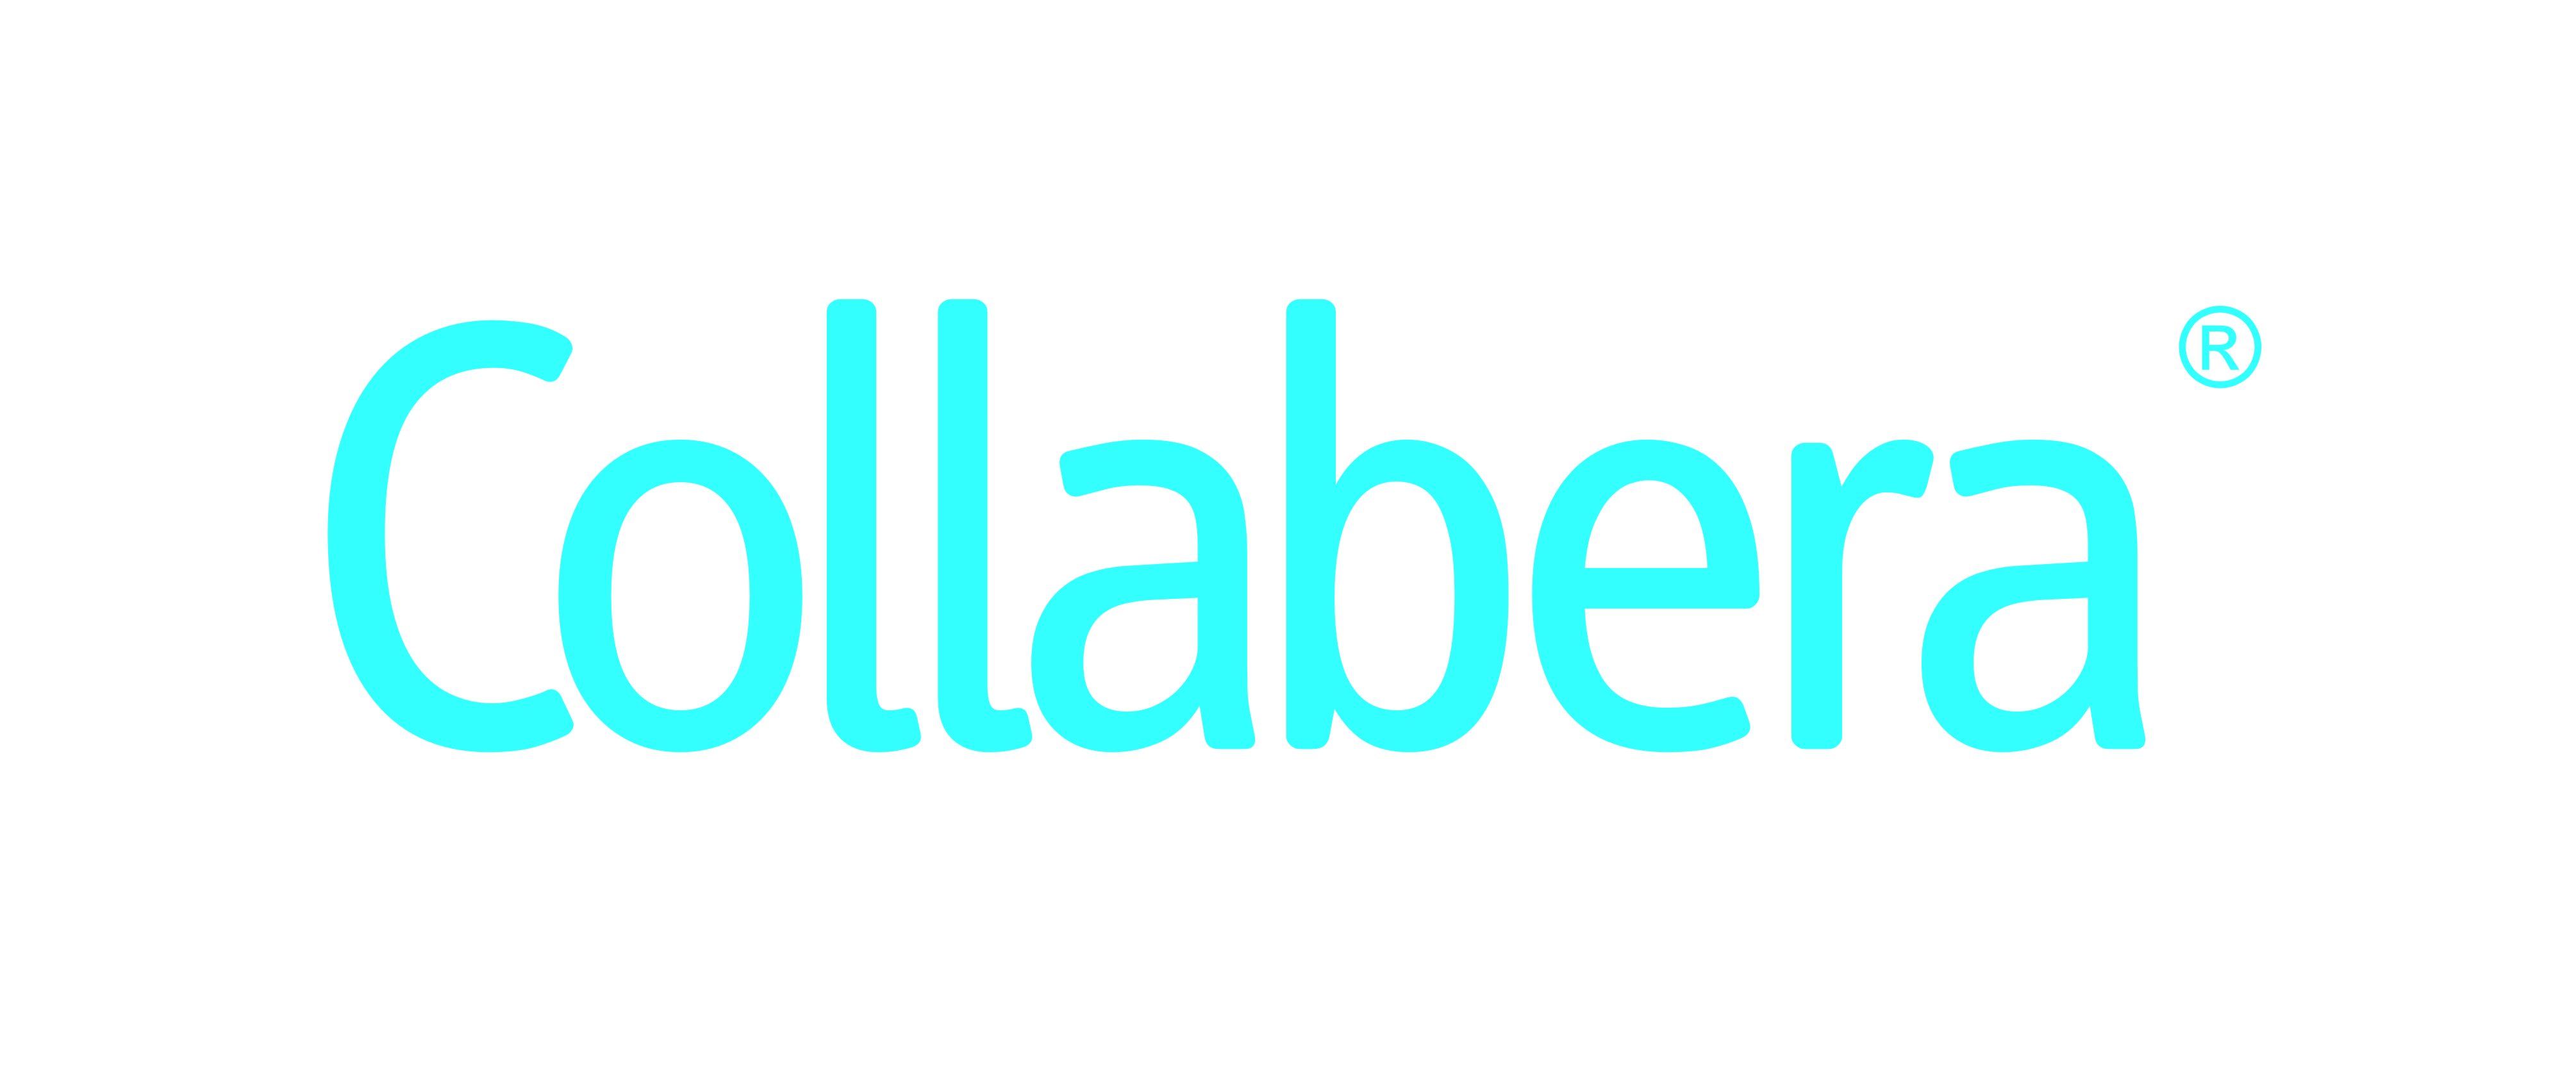 Collabera_Logo_(Updated)